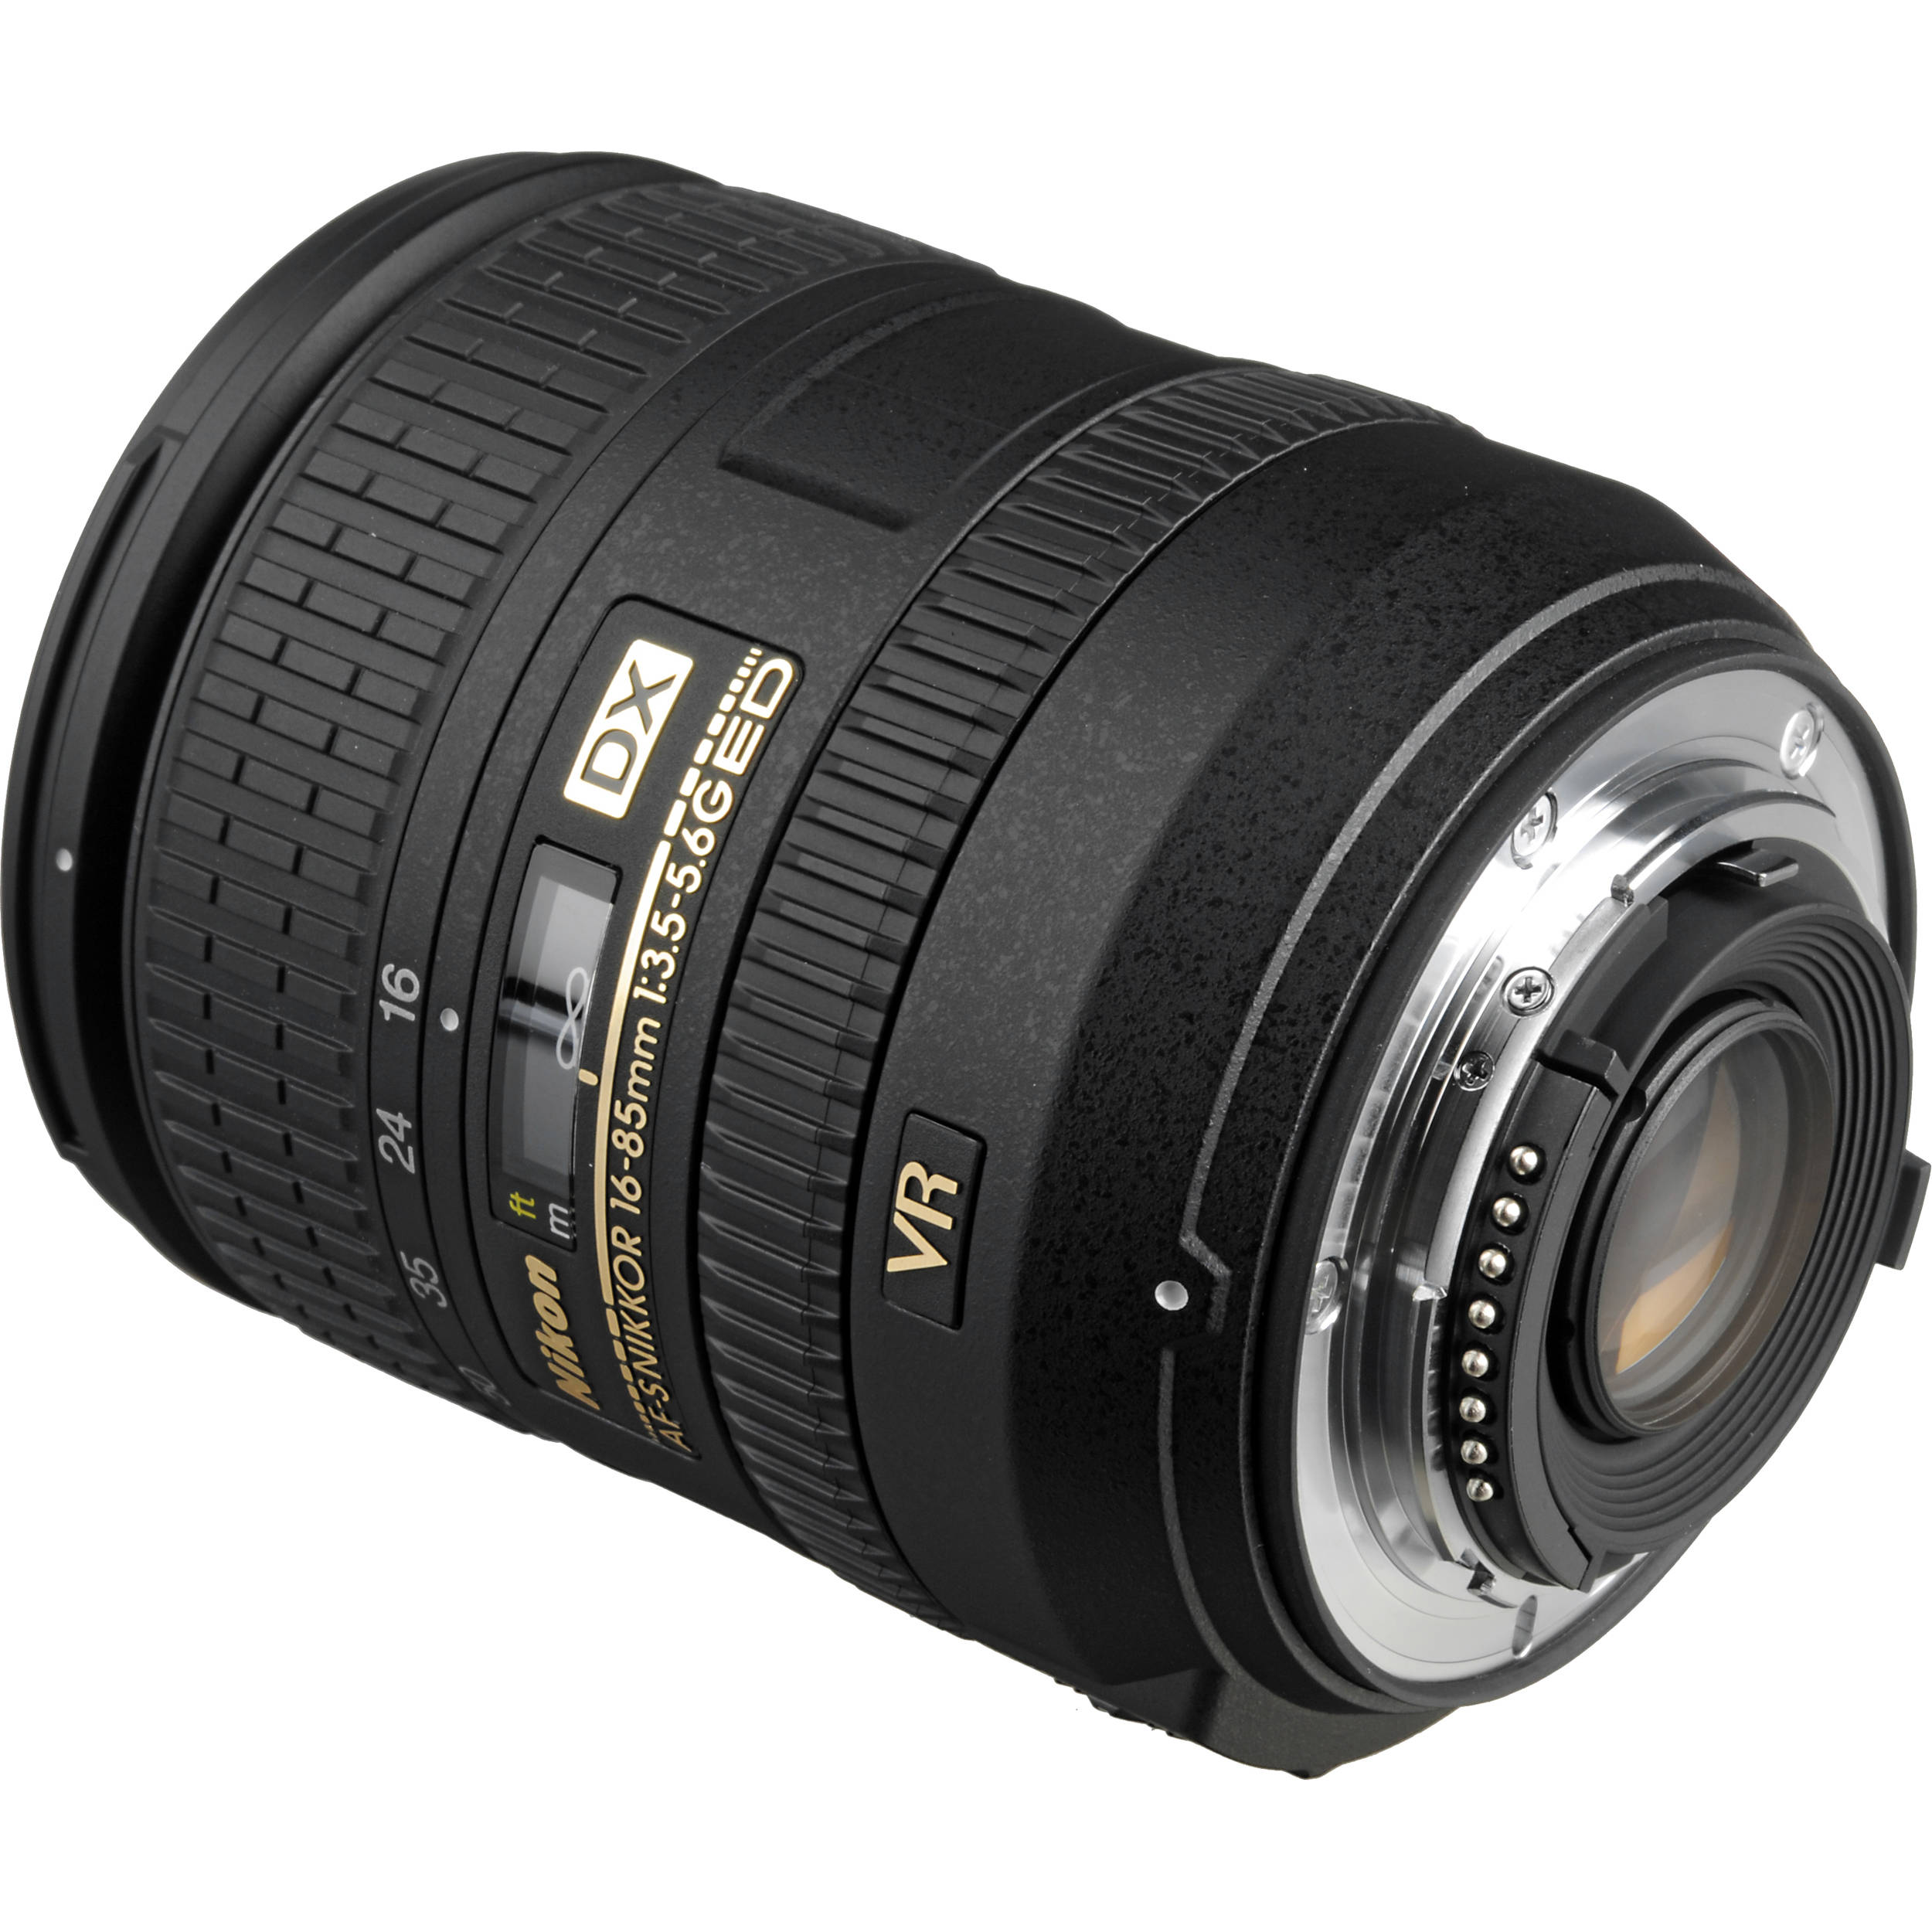 Nikon Af S Dx Nikkor 16 85mm F 3 5 5 6g Ed Vr Lens 2178 B H